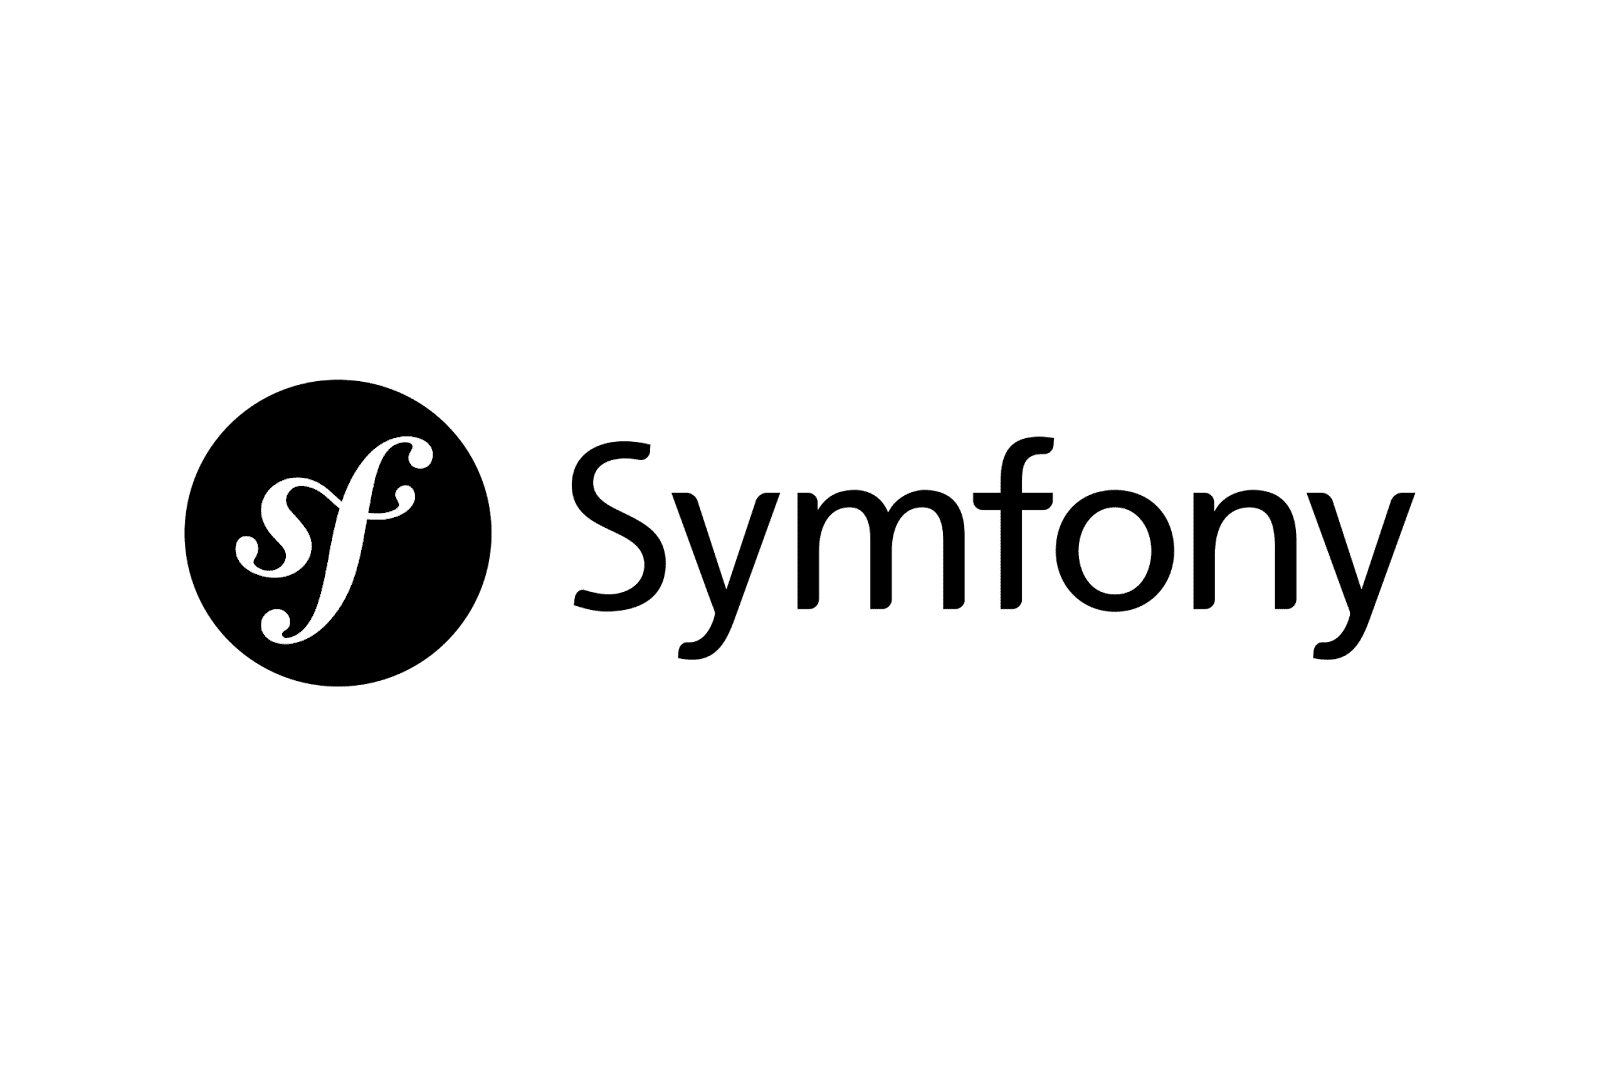 Symfony-logoet med ordet i sort og initialerne "sf" i hvidt oven på en sort cirkel.